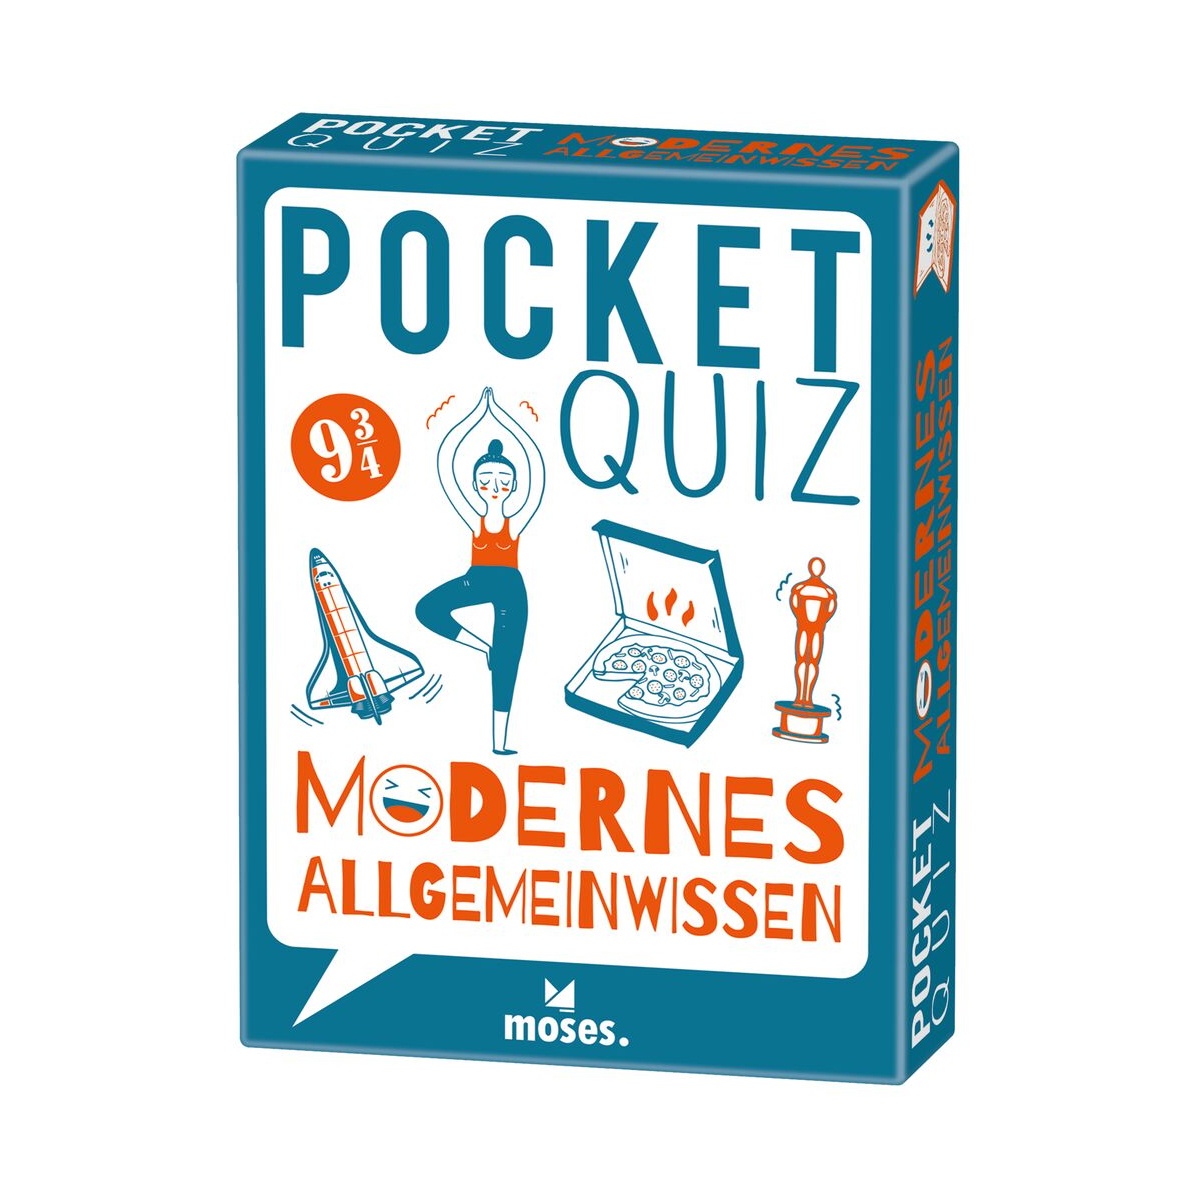 Pocket Quiz Modernes Allgemeinwissen von moses